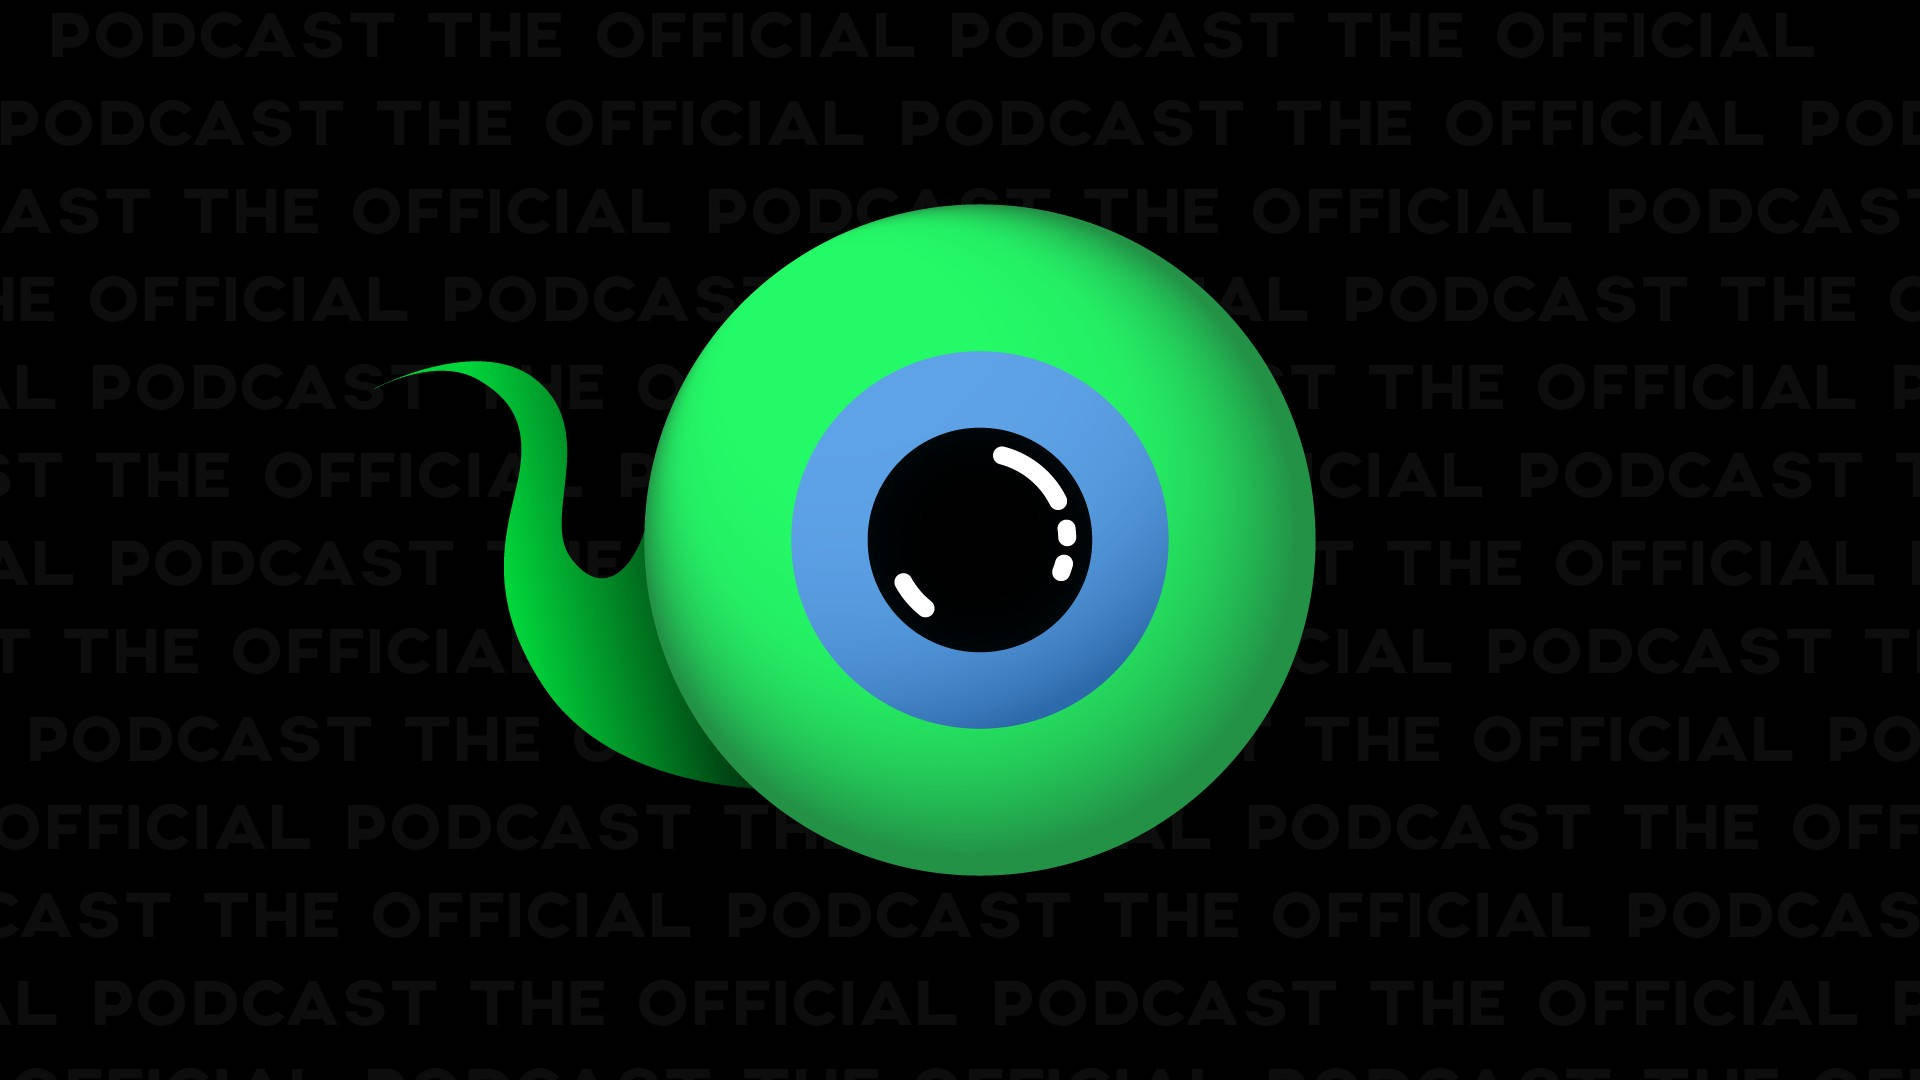 Jacksepticeye Podcast Background